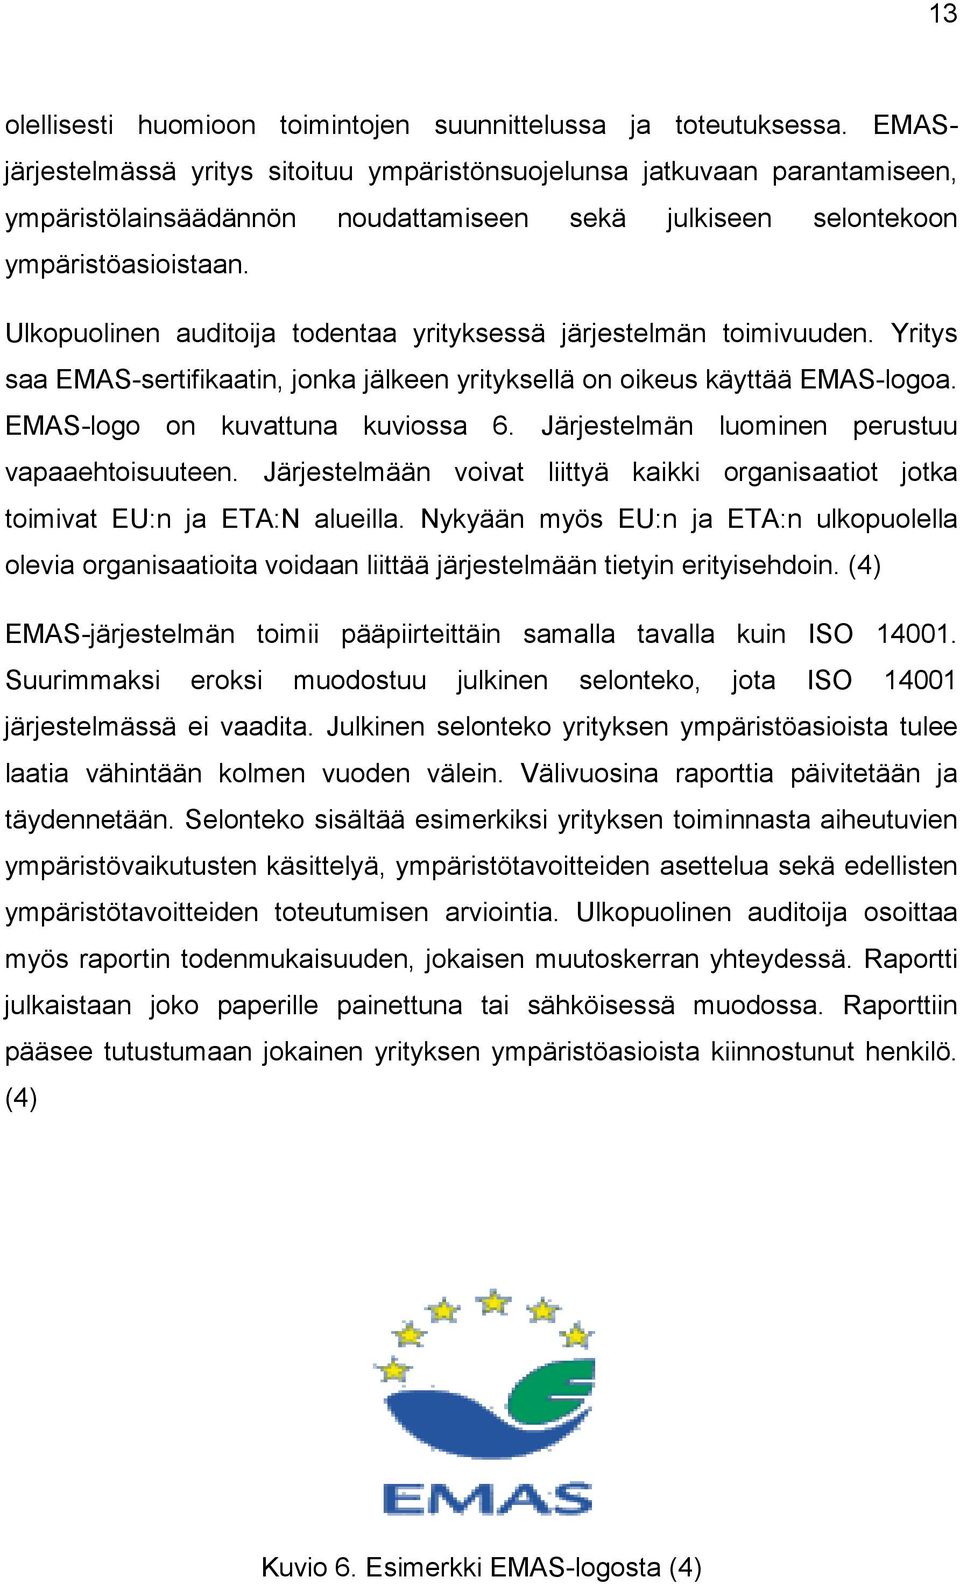 Ulkopuolinen auditoija todentaa yrityksessä järjestelmän toimivuuden. Yritys saa EMAS-sertifikaatin, jonka jälkeen yrityksellä on oikeus käyttää EMAS-logoa. EMAS-logo on kuvattuna kuviossa 6.